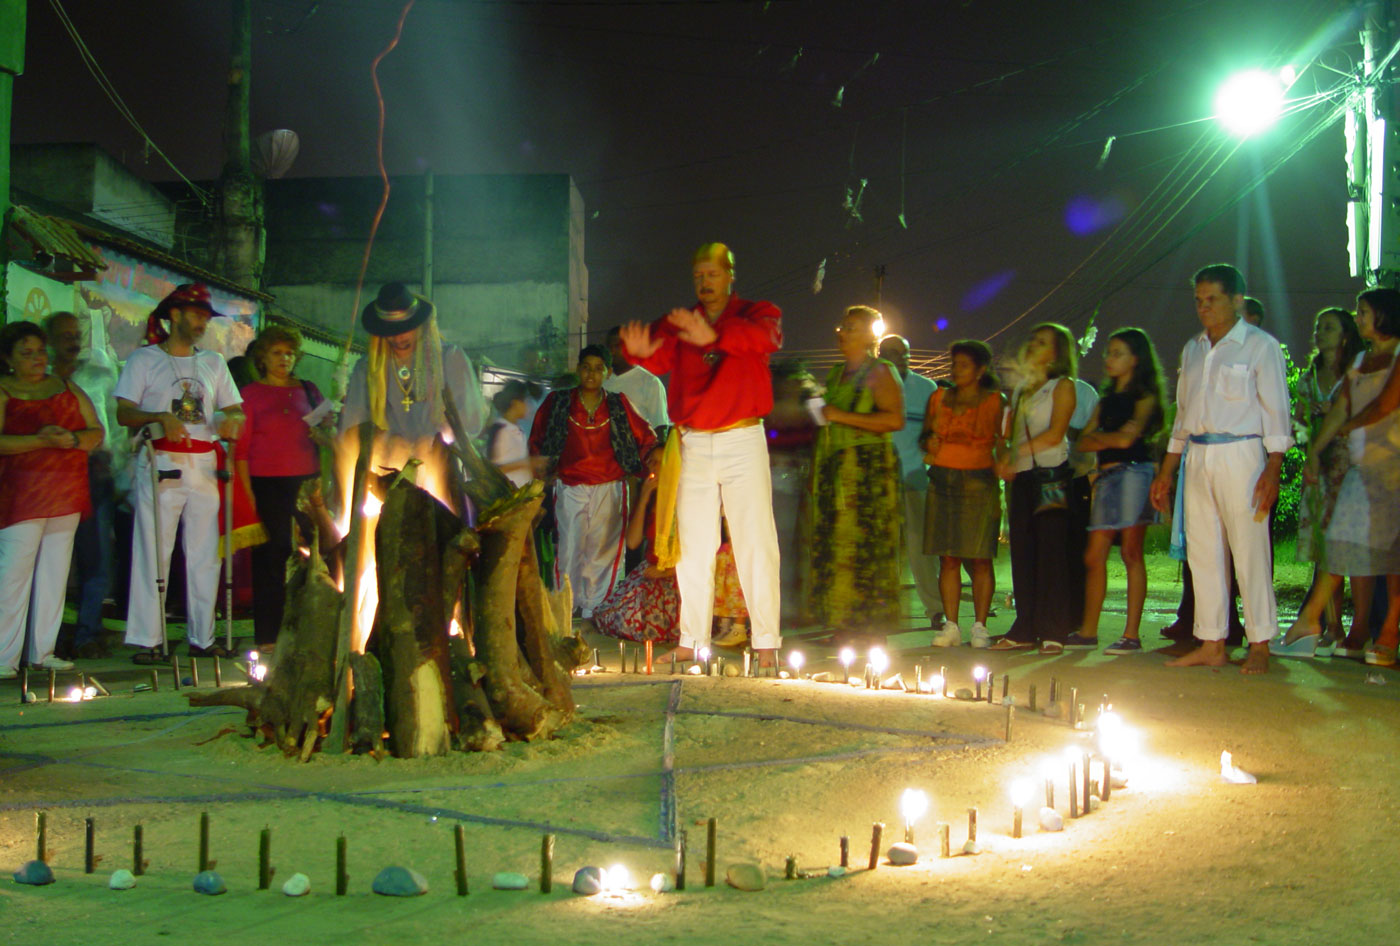 Gipsy Ceremony, Suburb Rio de Janeiro, 2004